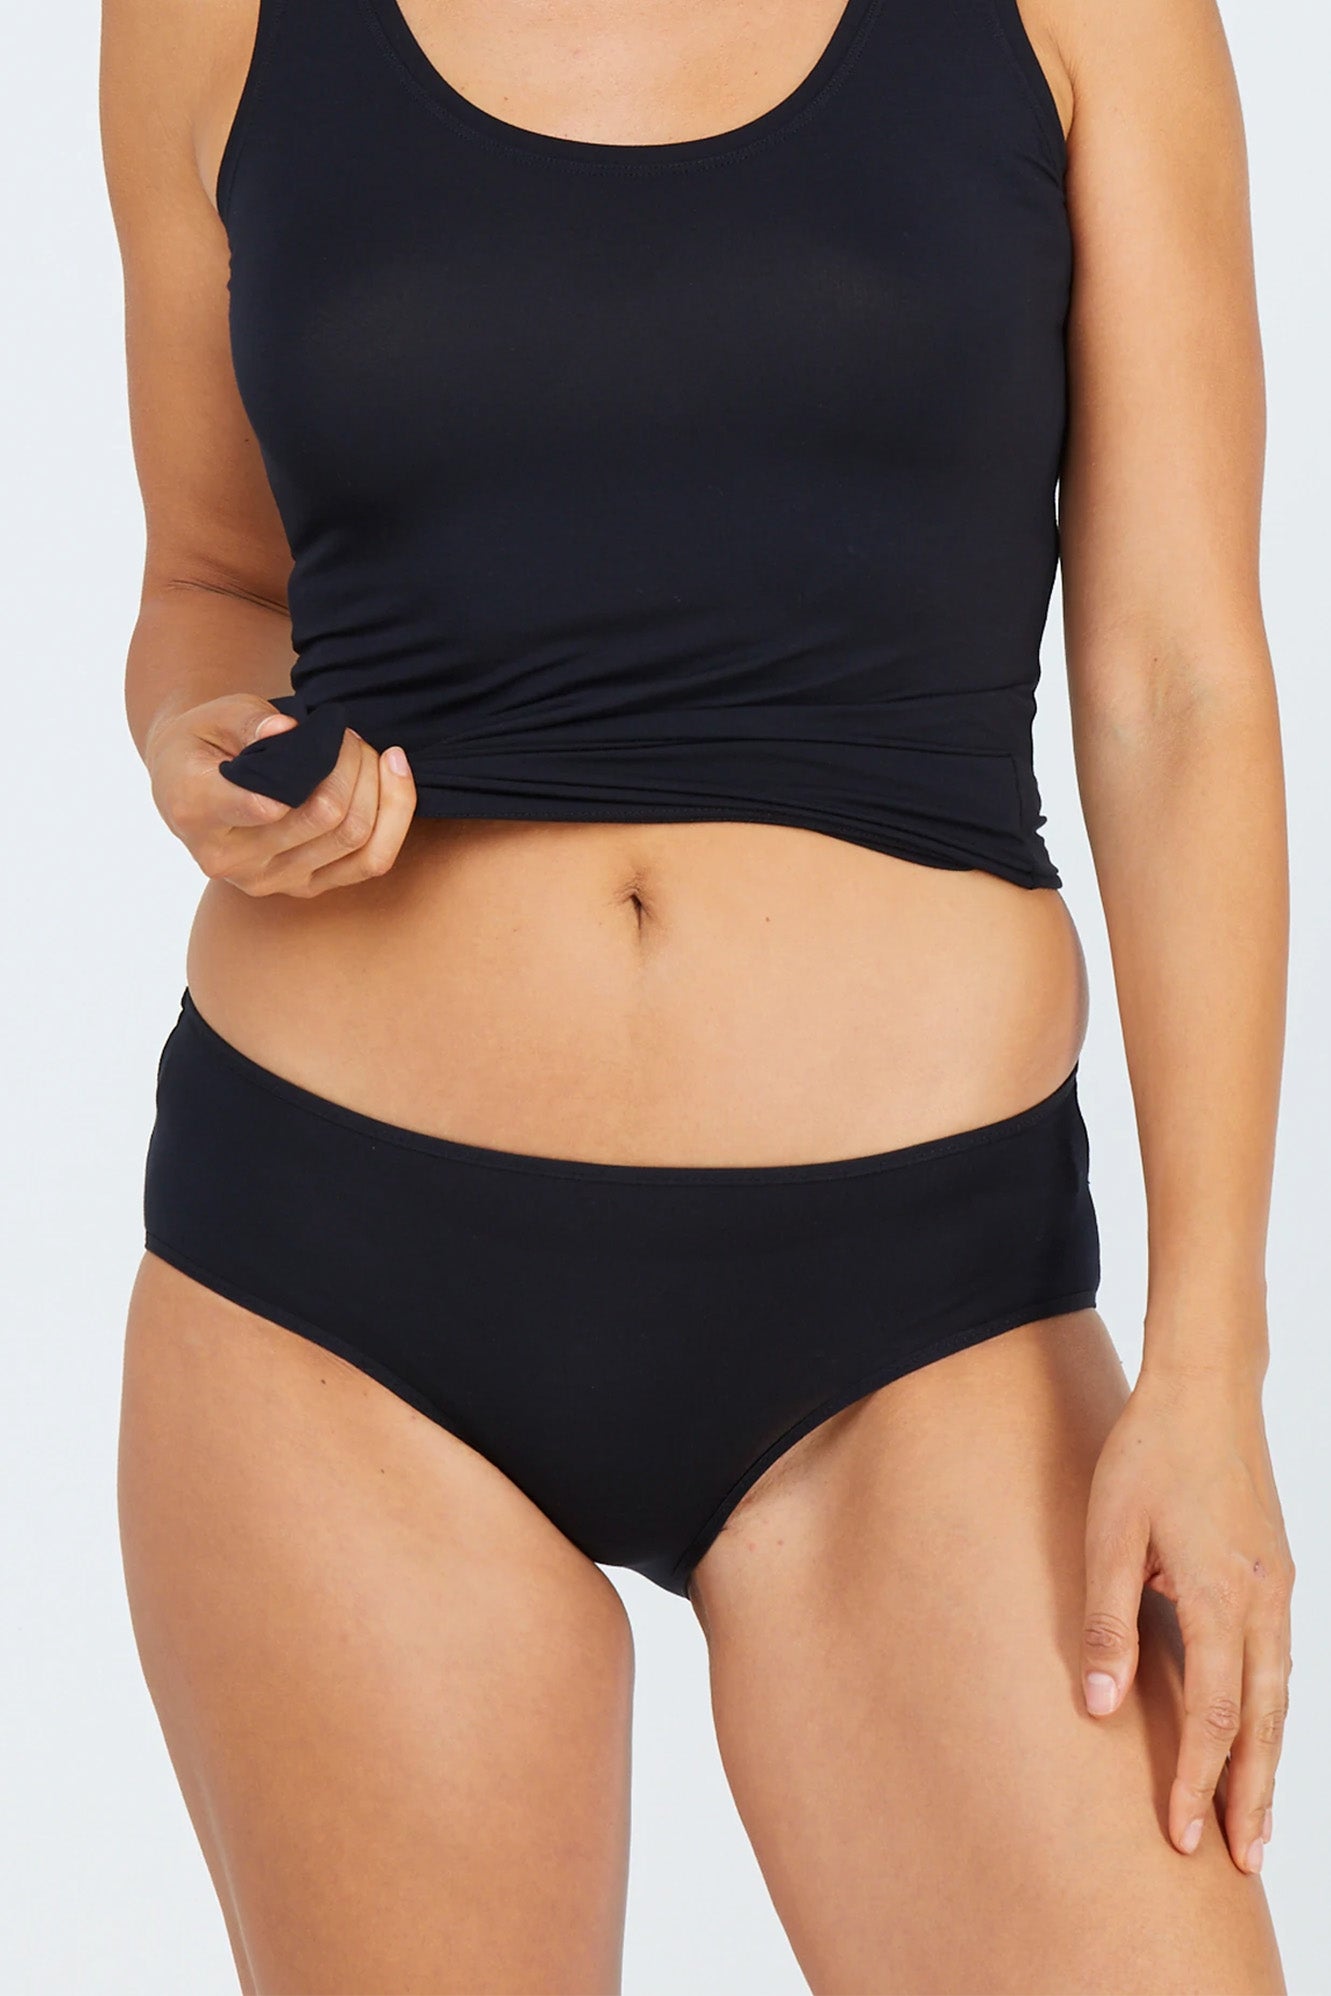 Woman wearing black tani 5984 Hipster Bikini